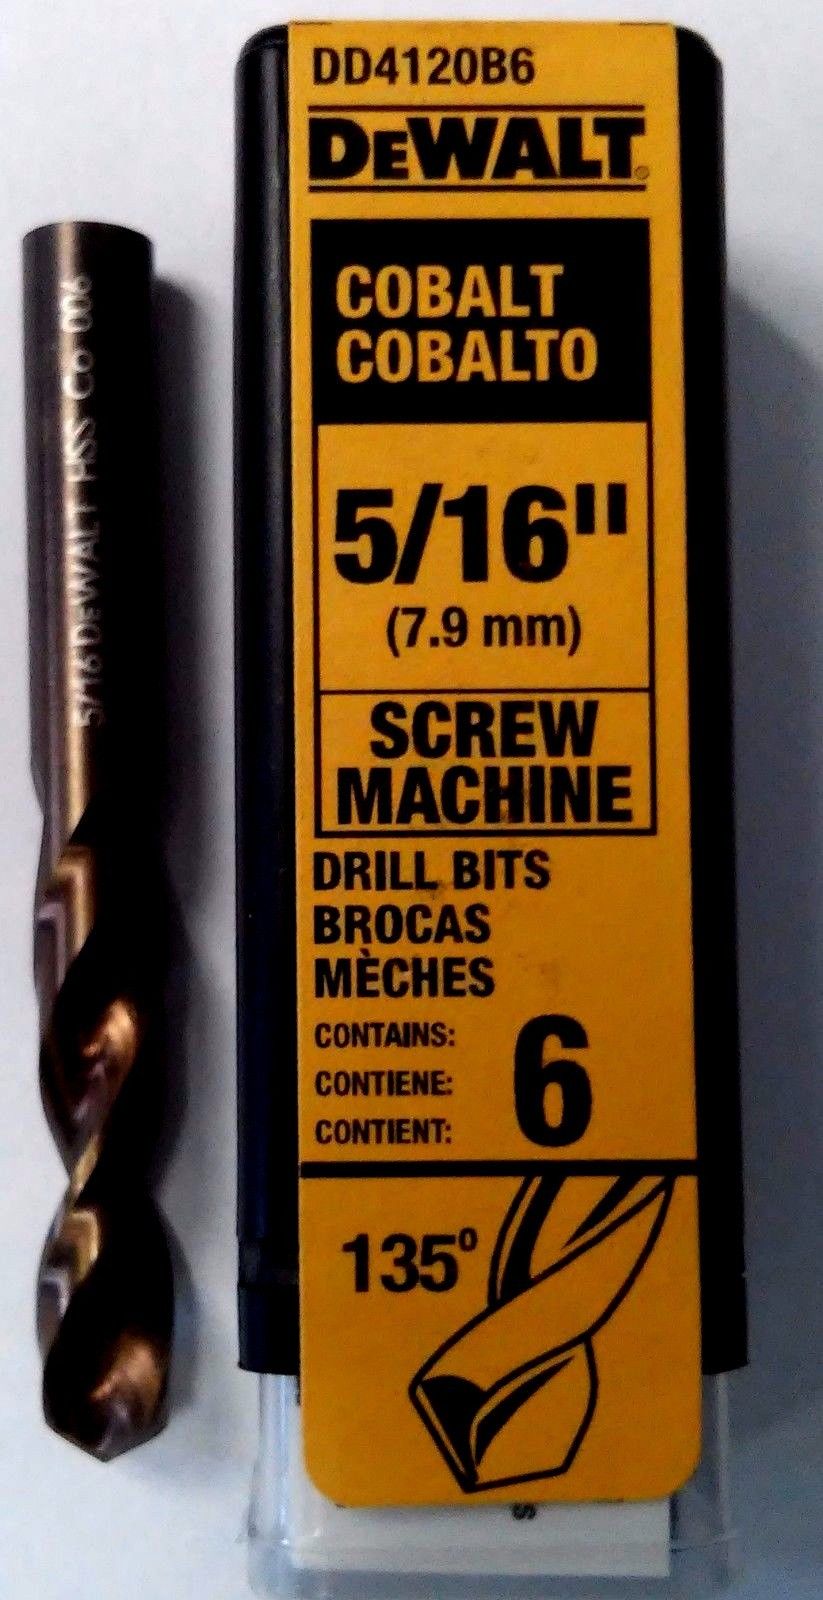 DeWalt DD4120B6 5/16" Cobalt Screw Machine Drill Bits 6Pcs. Germany